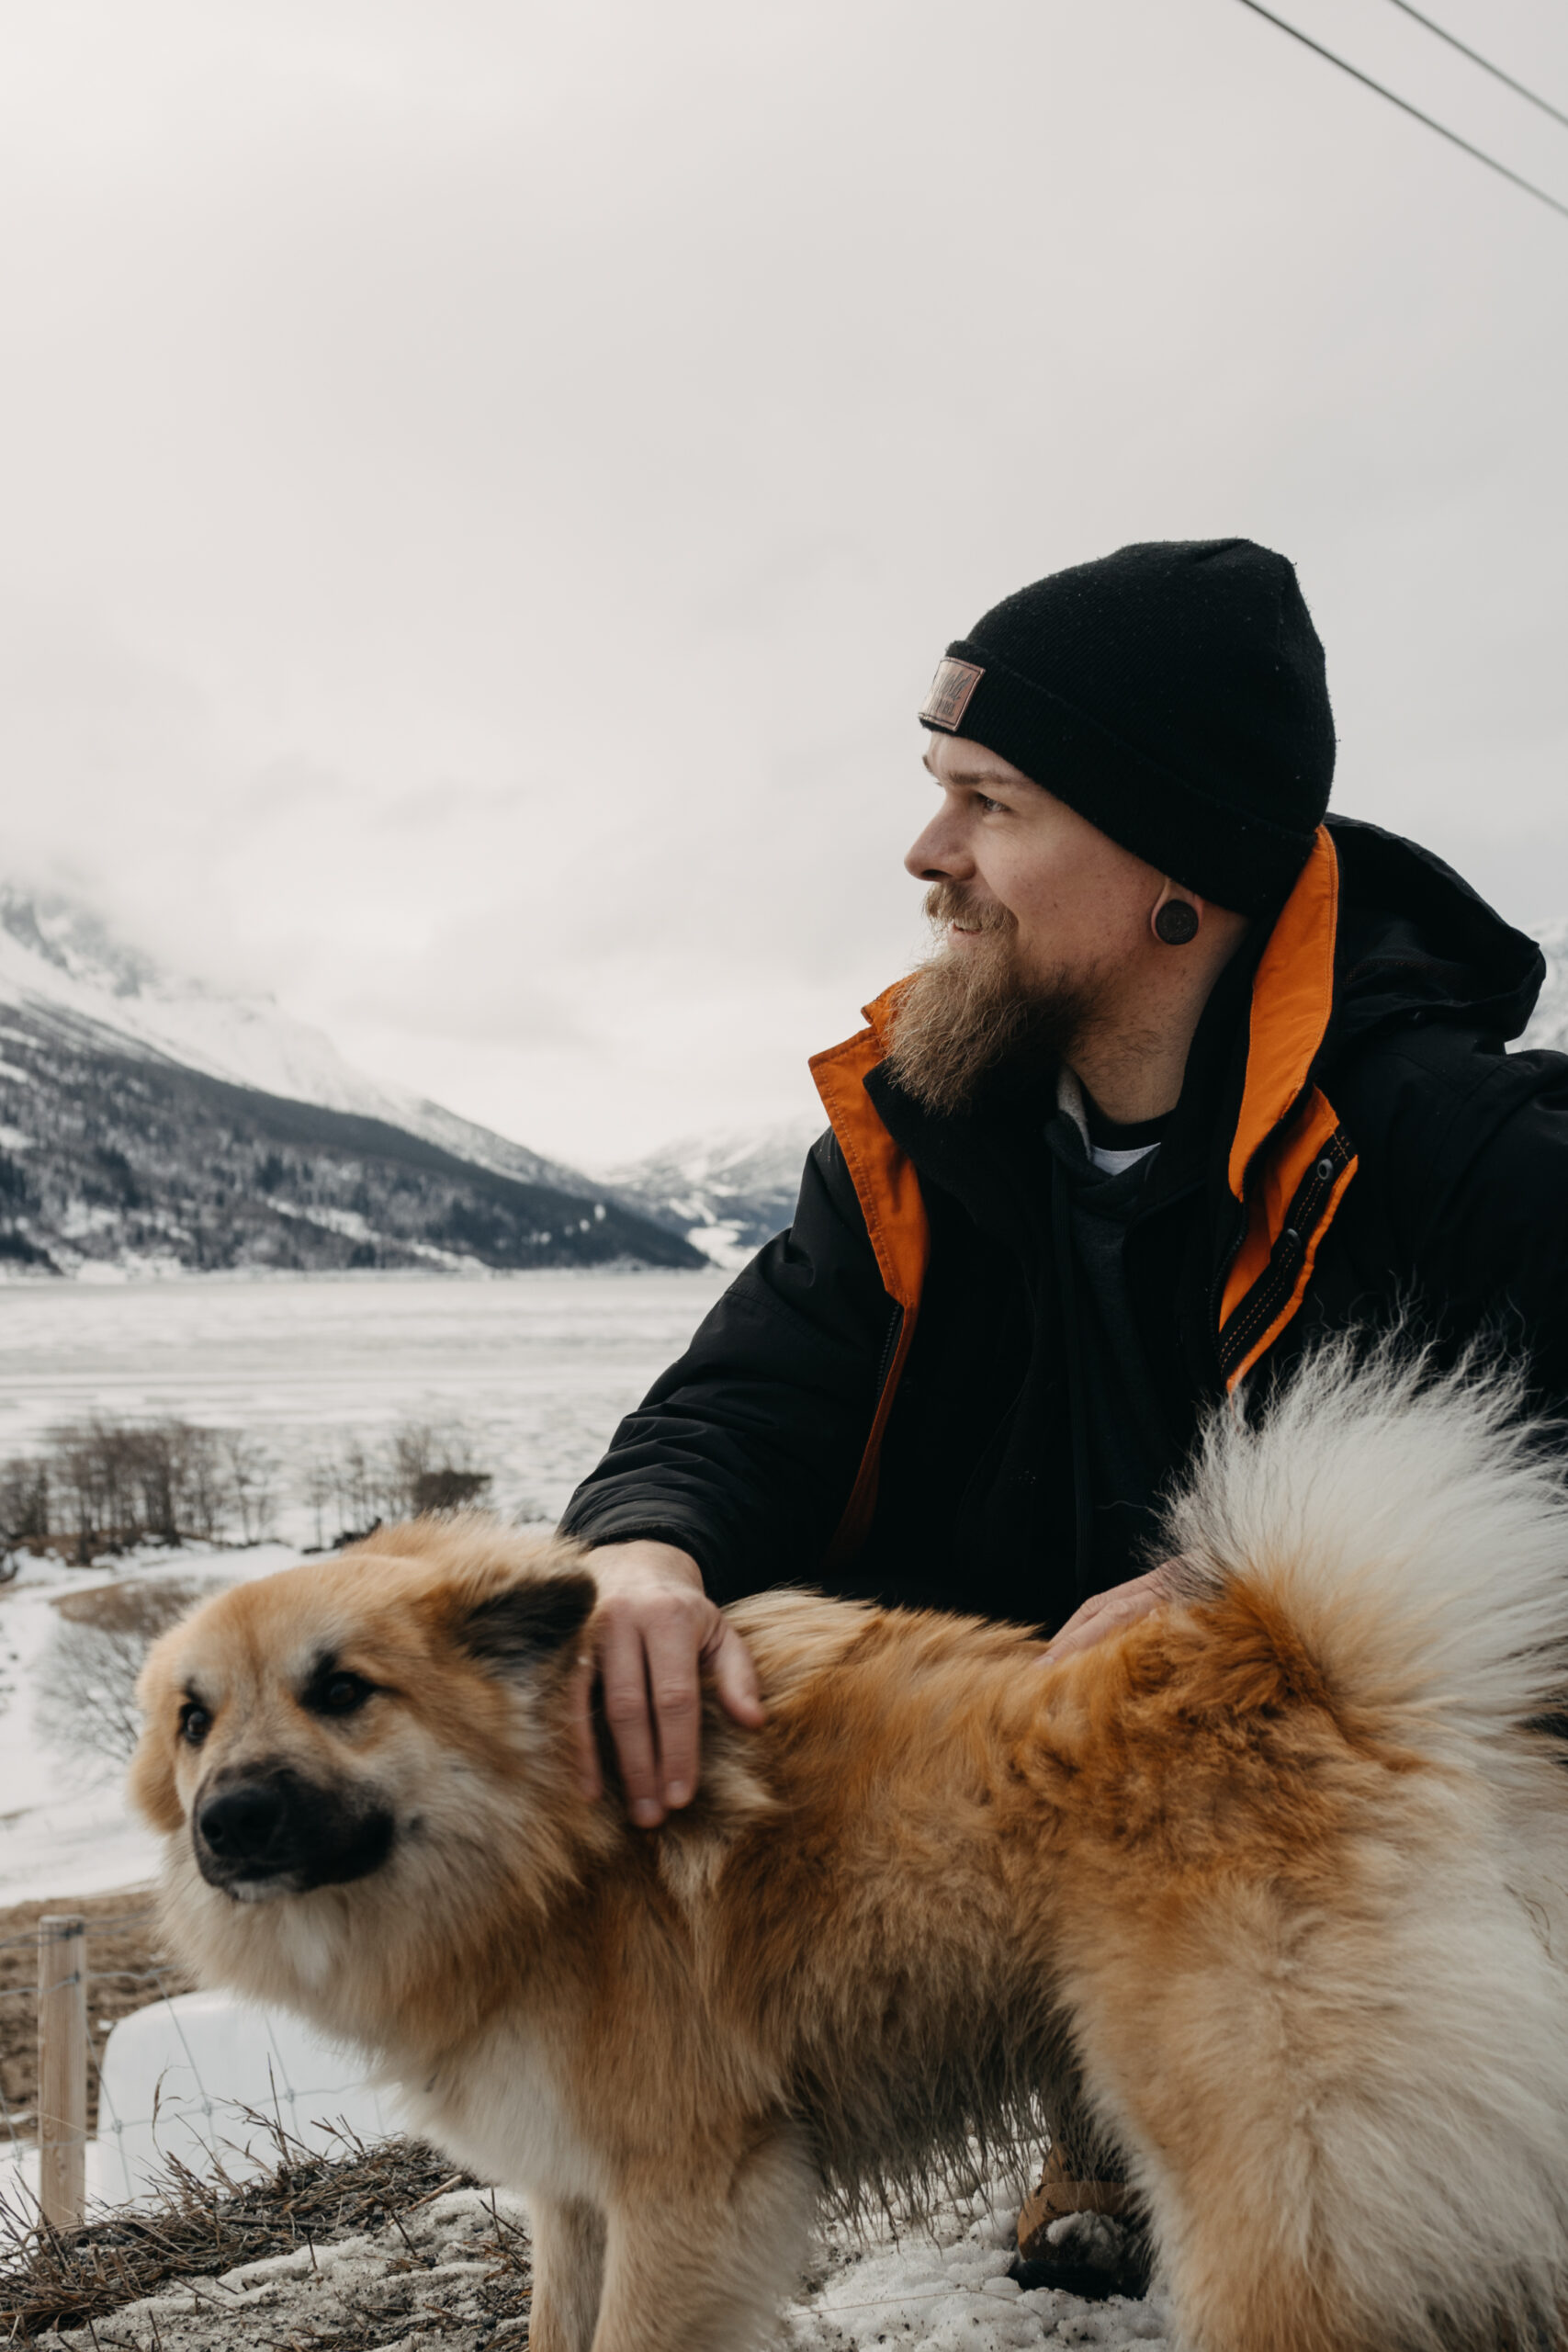 Henry mit Hund in Norwegen. Es sind Berge und ein gefrorener See im Hintergrund zu sehen.